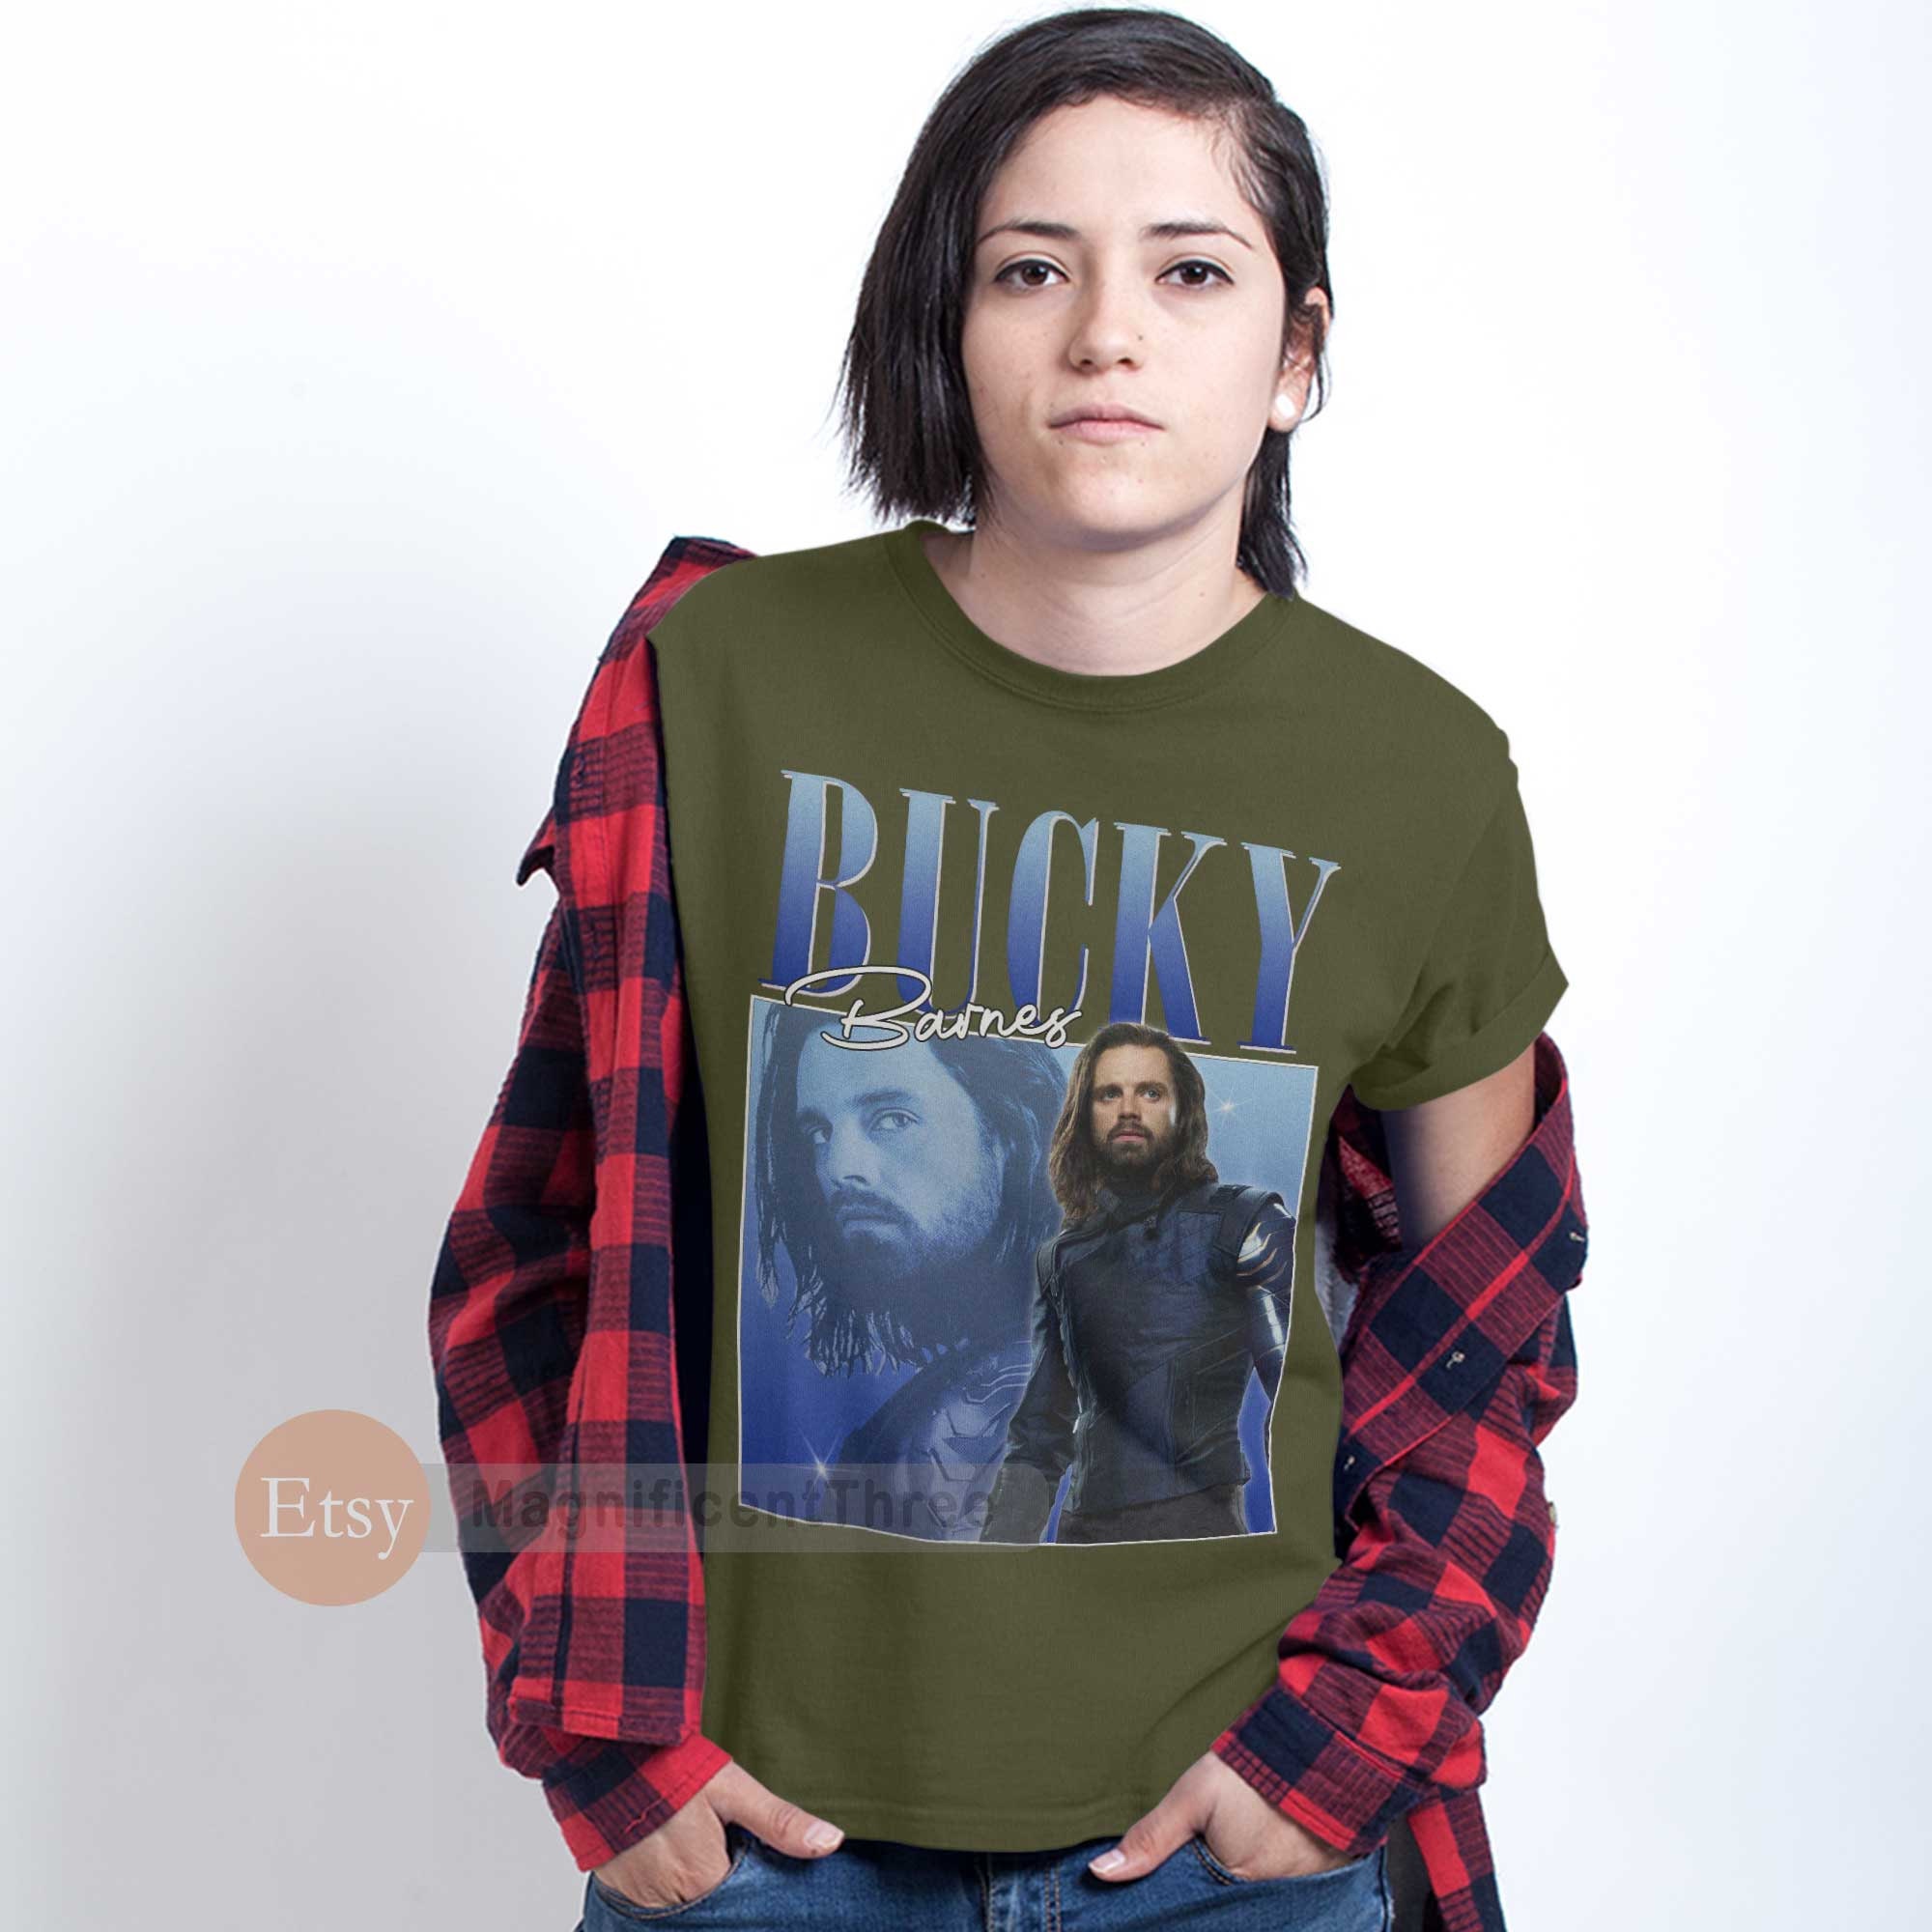 Discover Bucky Barnes shirt vintage retro design T-Shirt